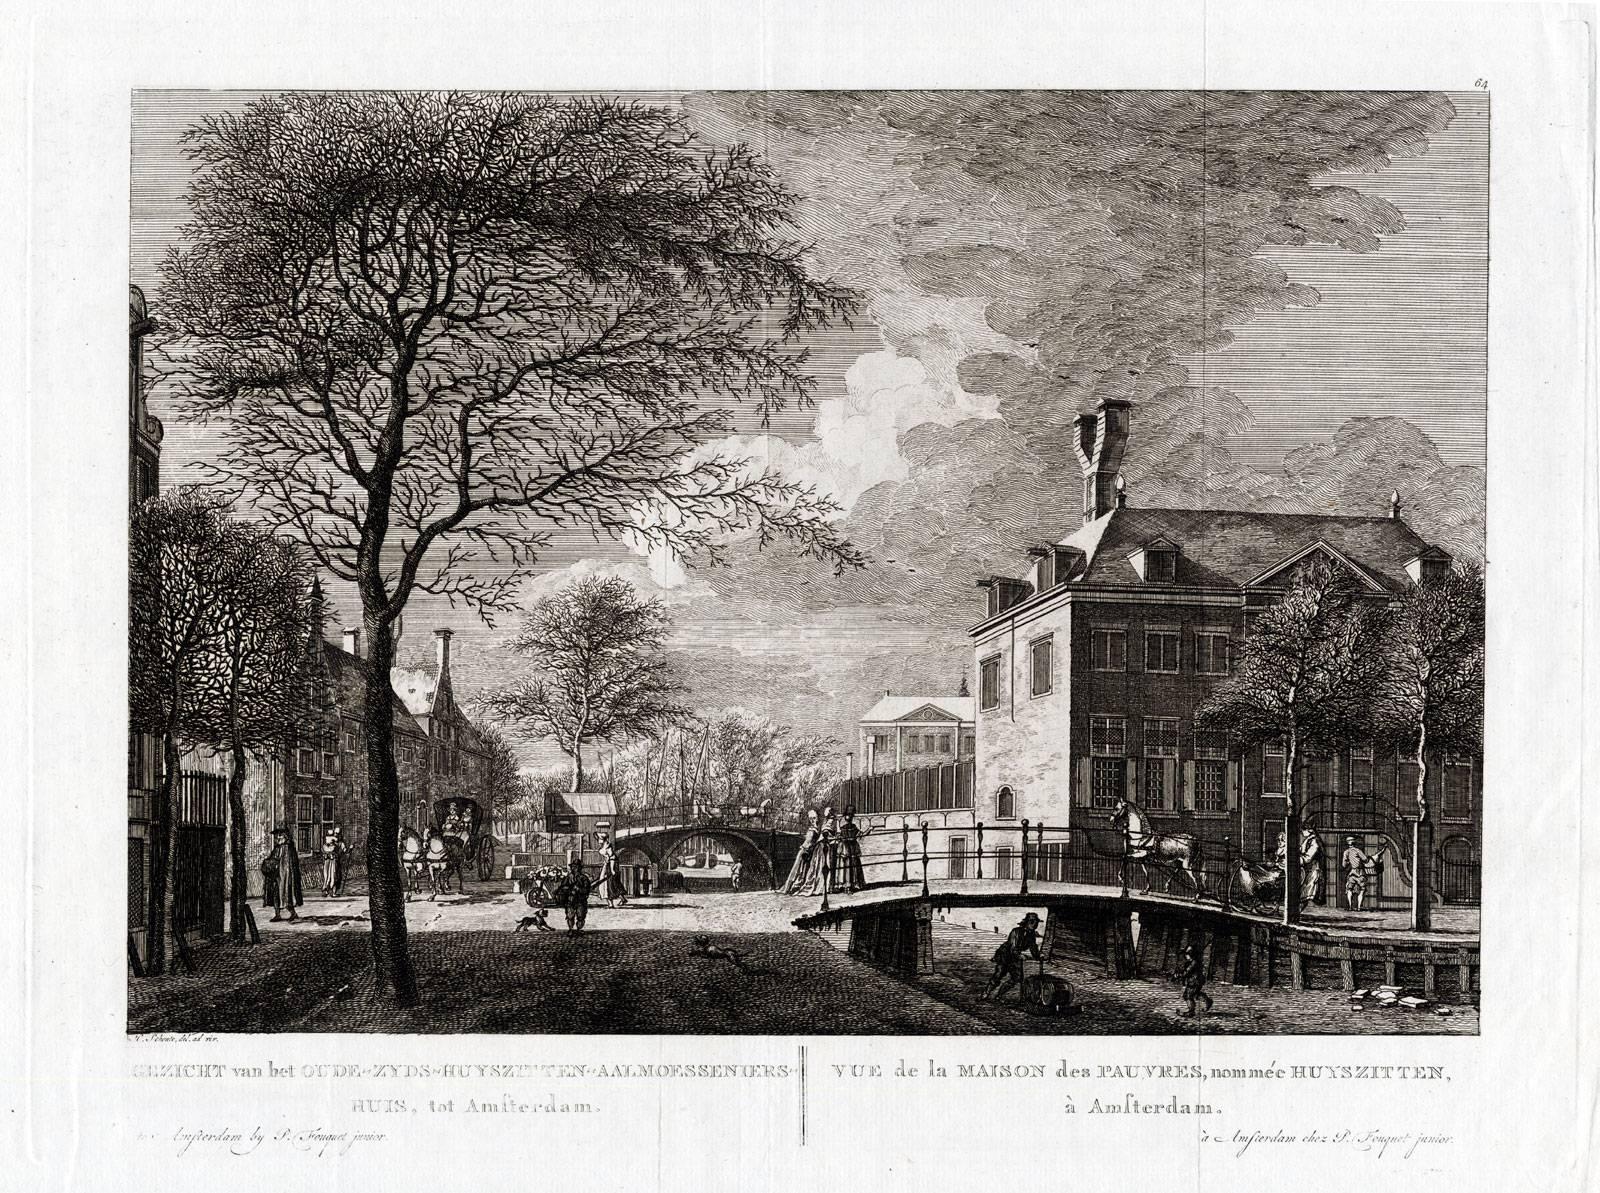 H. Schoute Landscape Print - Gezicht van het Oude-Zyds-Huyszitten-Aalmoesseniers-Huis, tot Amsterdam.